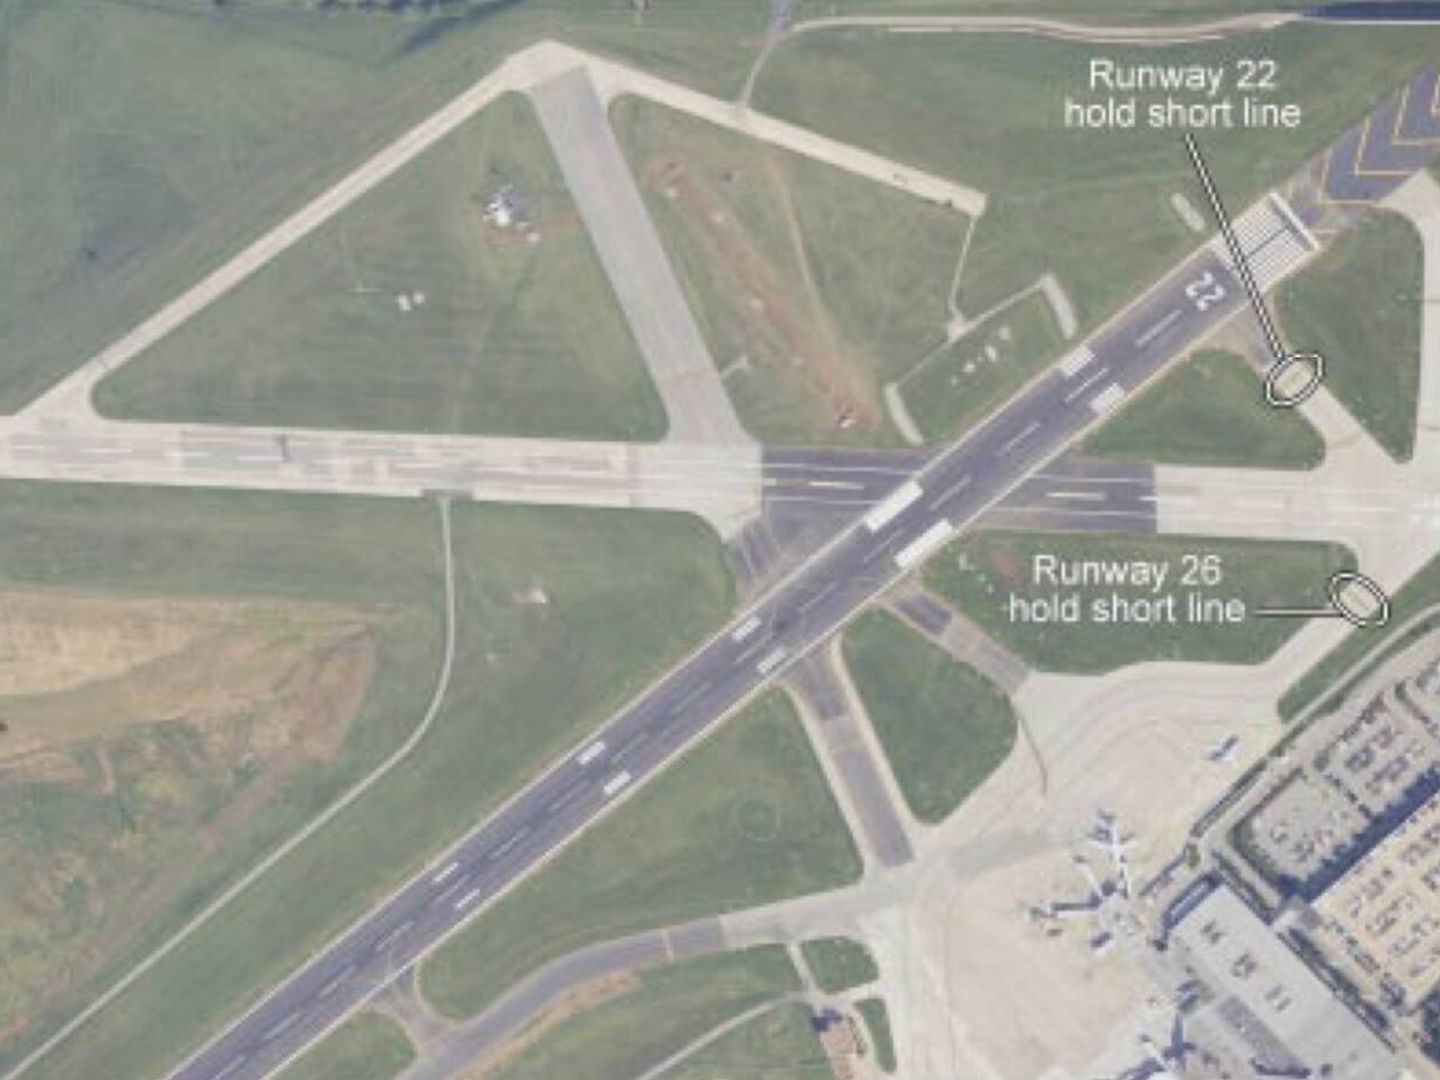 Imagen aérea incorporada al informe oficial que marca la disposición de las pistas del aeropuerto Blue Grass.